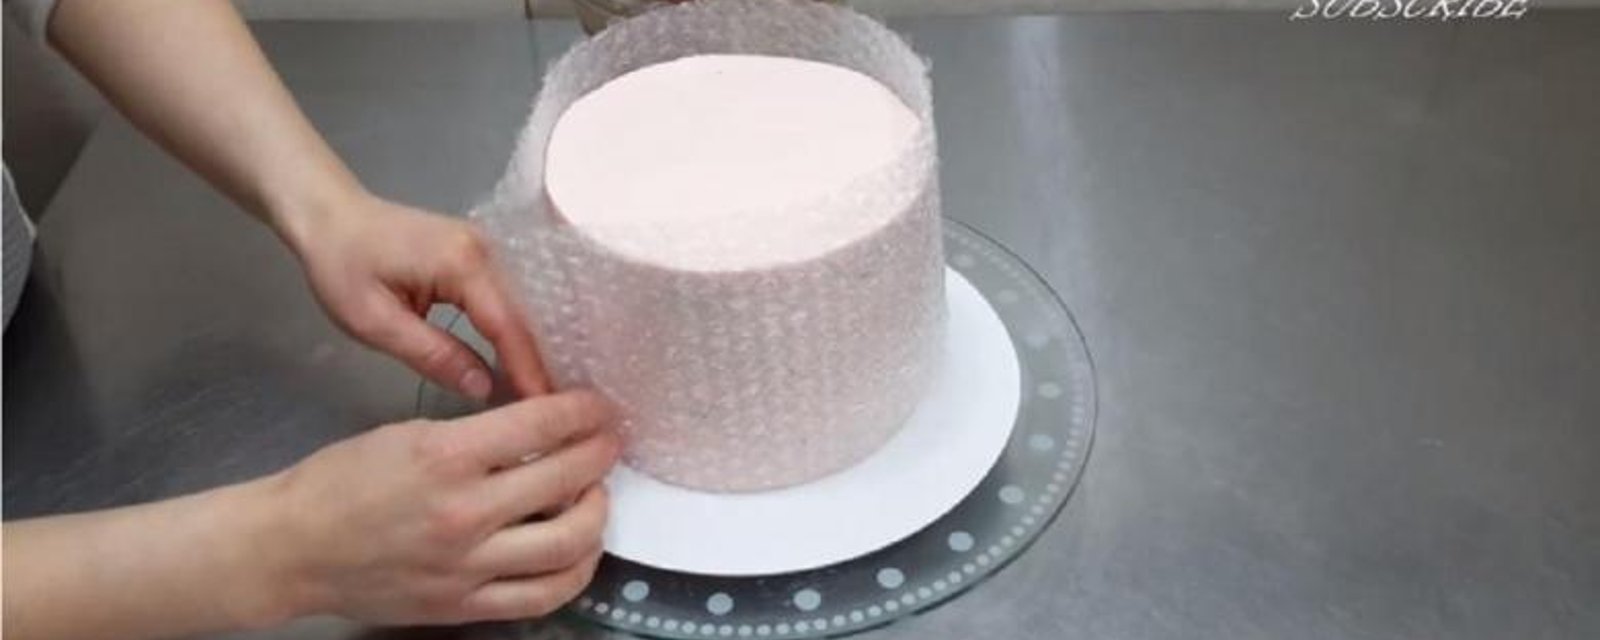 Elle enroule son gâteau dans du papier bulle, ce qu'elle a créé est tout simplement démentiel! 